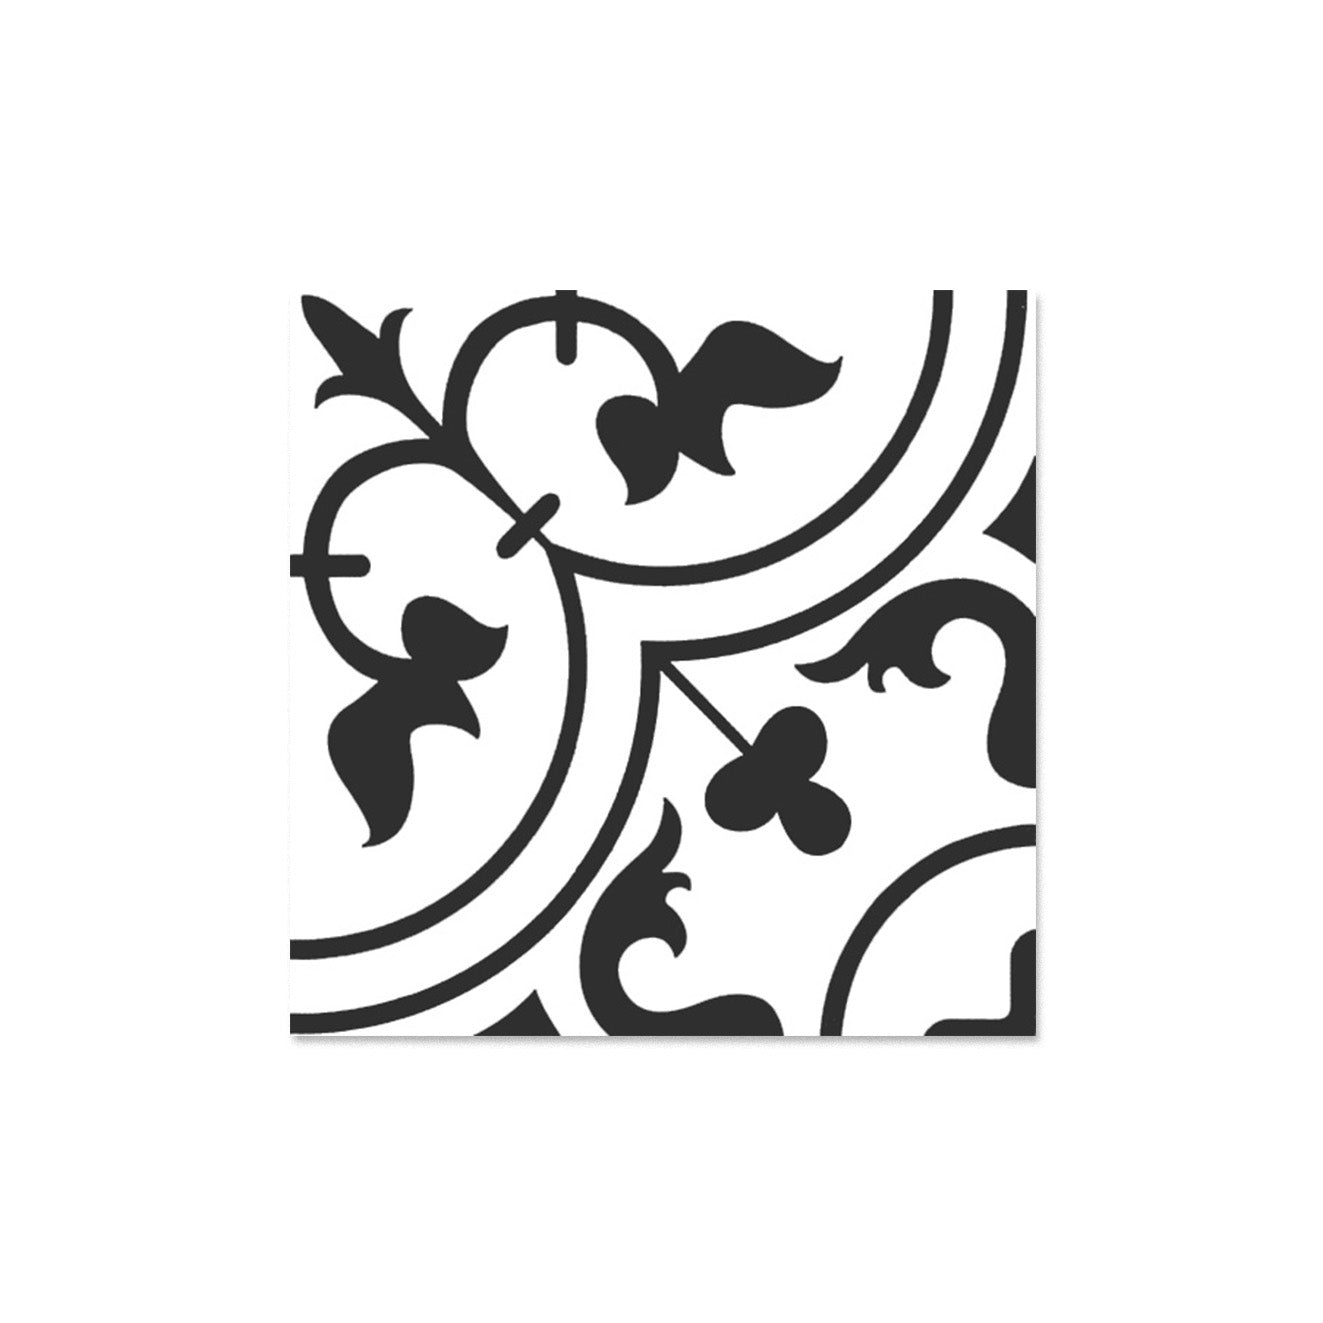 中國佛山瓷磚 China Foshan Basics 簡約北歐風格黑白啞光地磚墻磚 A3022 簡約北歐黑白花磚 30×30cm